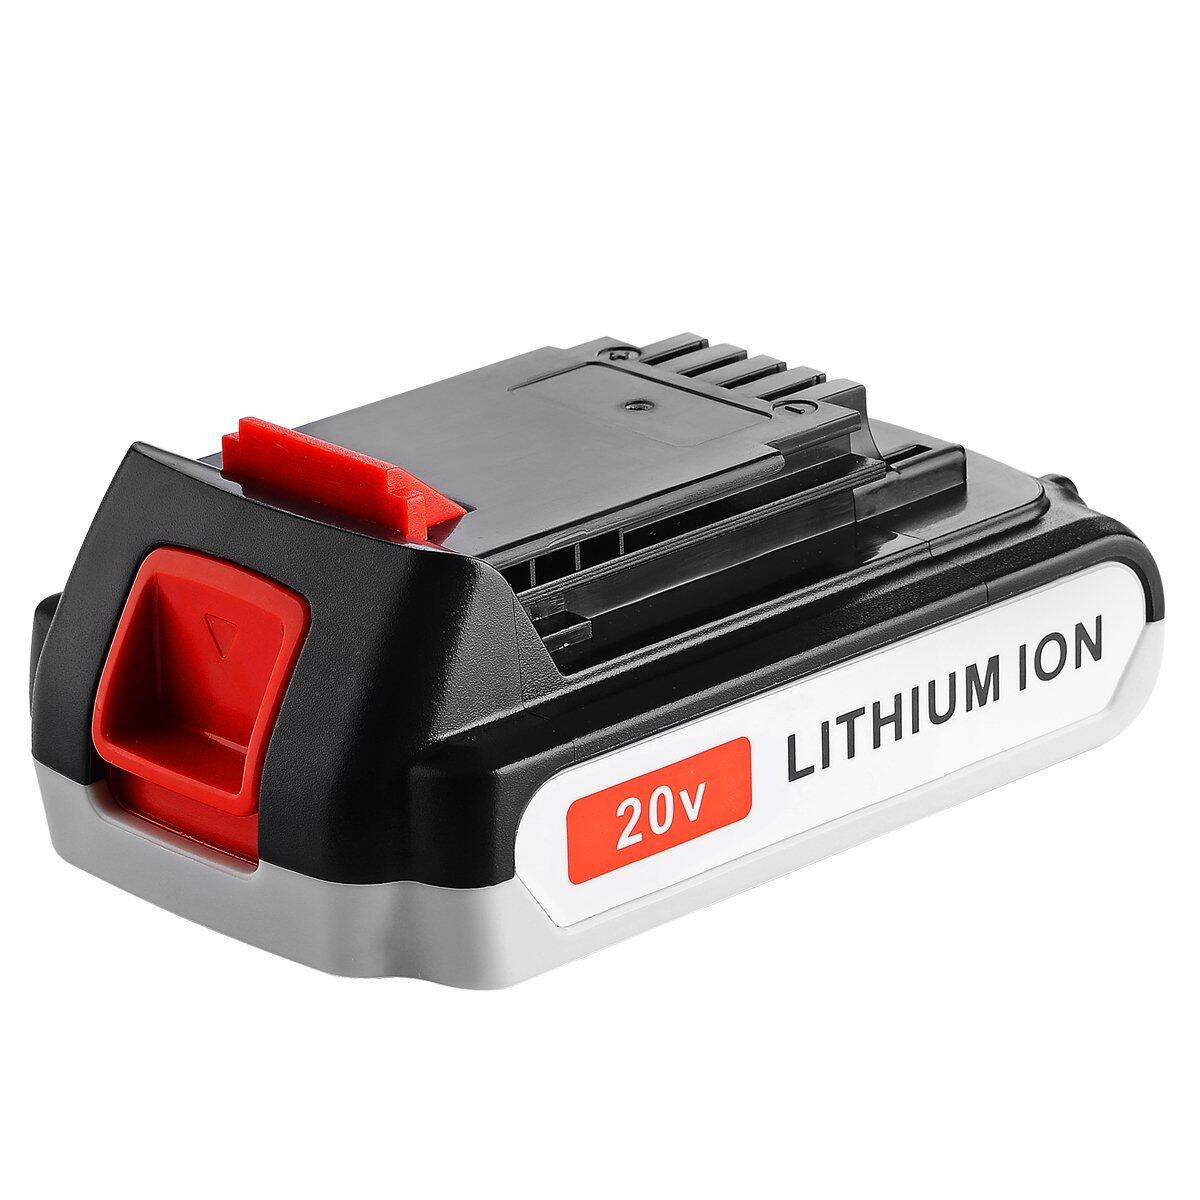 Hilong Li-ion BD LBXR20 20V battery pack for Power tool